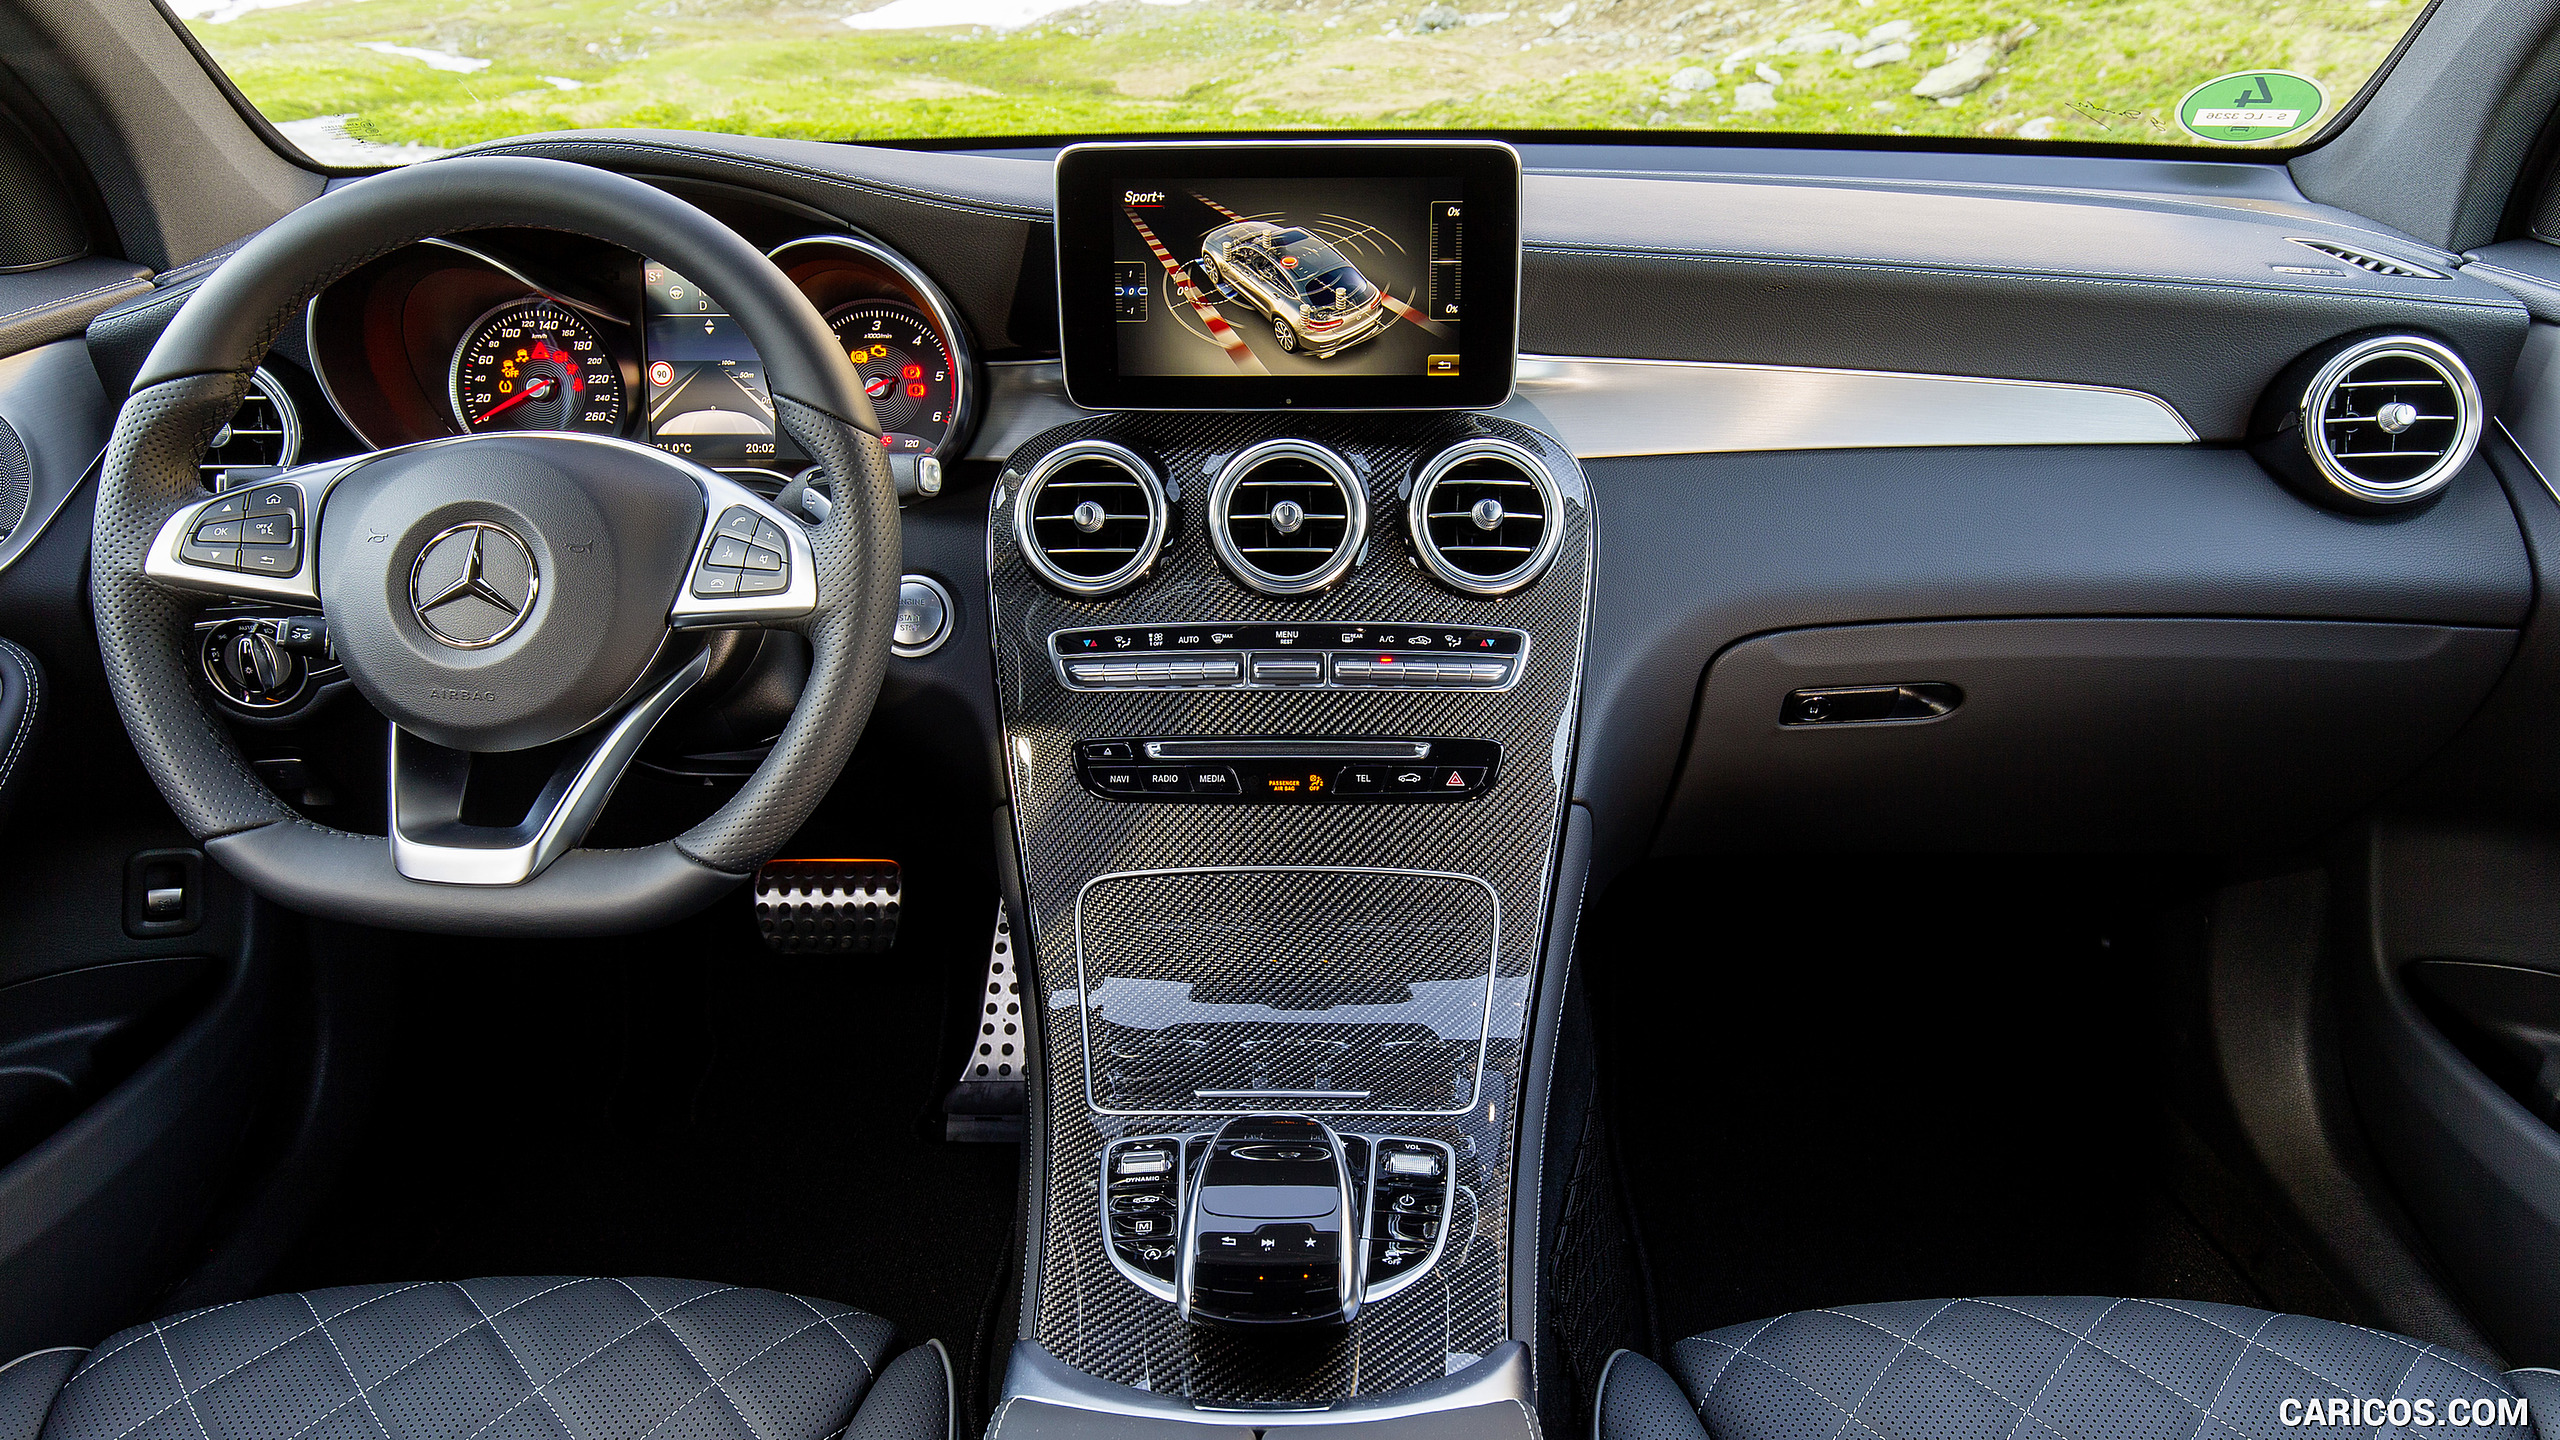 2017 Mercedes-Benz GLC 350 d Coupe - Designo Black Nappa Leather Interior, Cockpit, #82 of 144